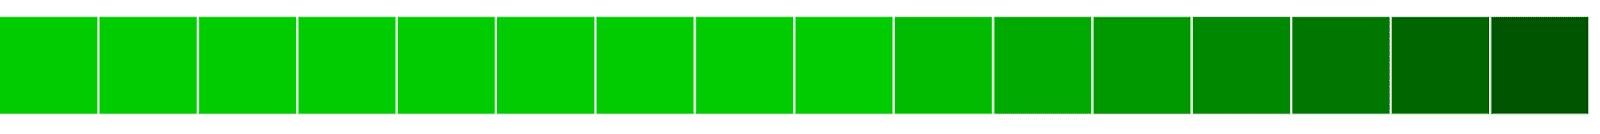 Горизонтальное выравнивание зеленых блоков от светлого к темному.